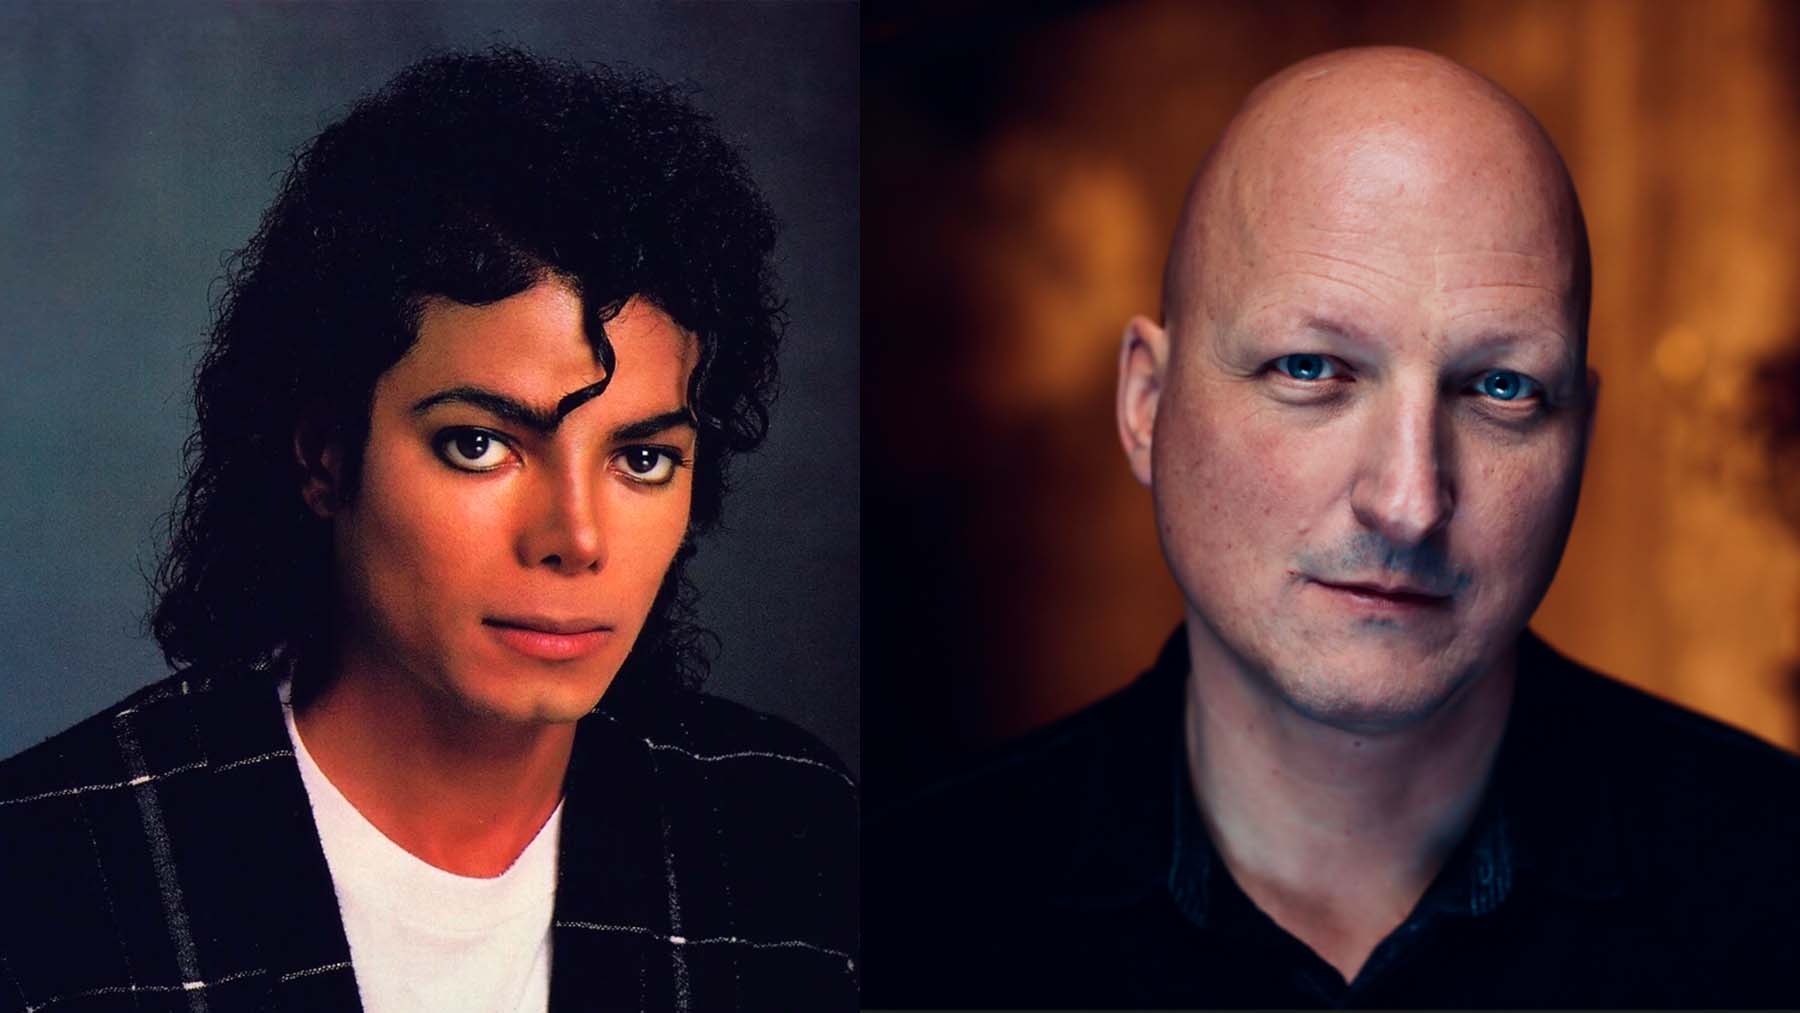 El director Dan Reed ha criticado duramente el nuevo biopic de Michael Jackson.